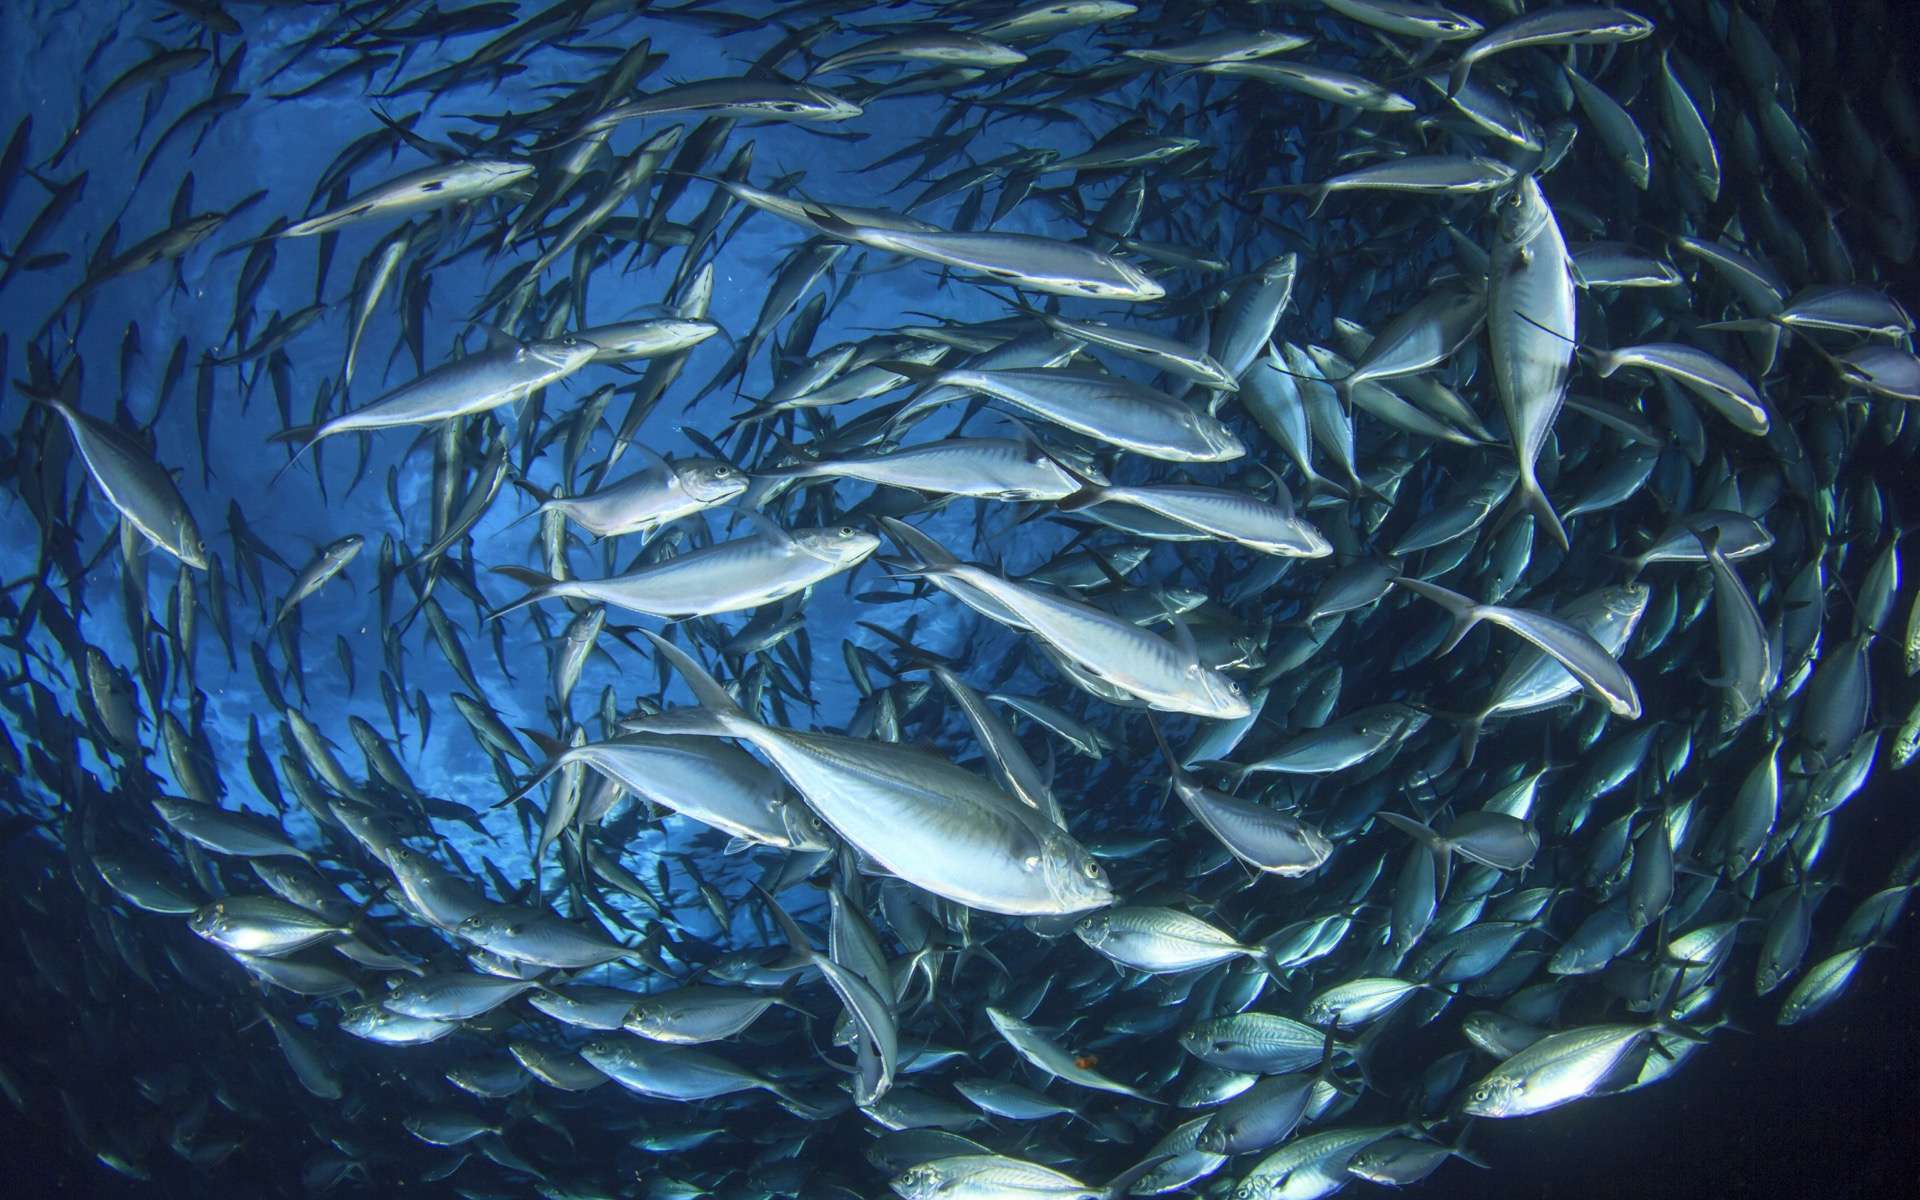 La mise en place de quotas de pêche et la lutte contre la pêche illégale permettent à certaines populations de poissons de mieux se porter. © Richard Carey, Adobe Stock